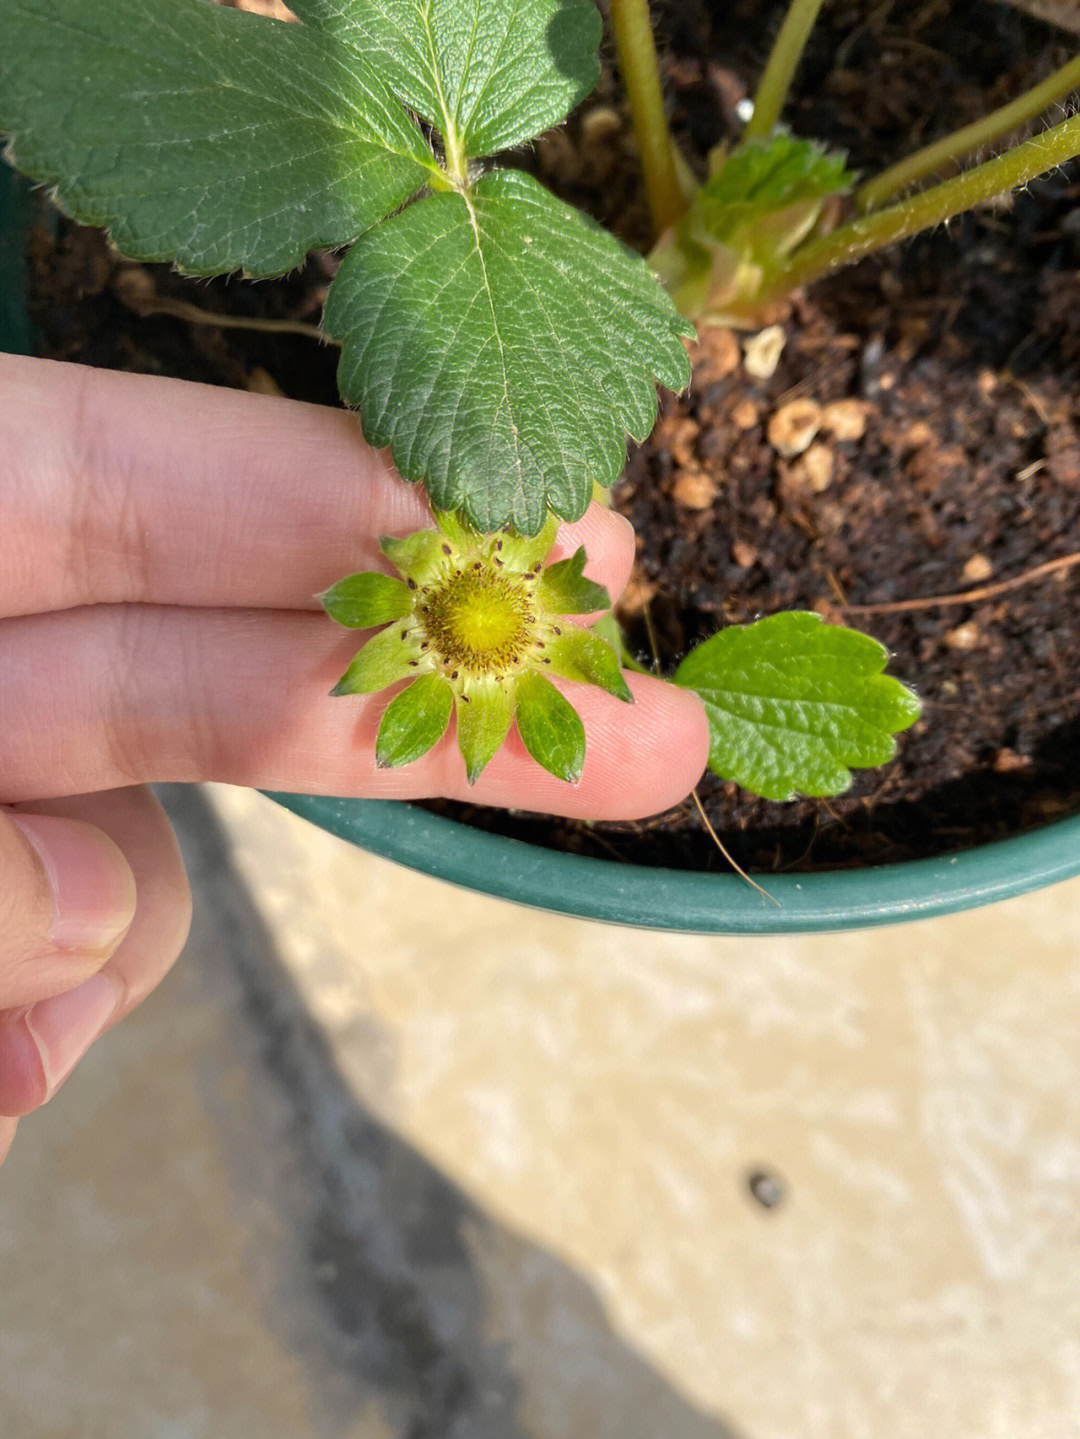 2阴雨天气过去了,终于把小草莓搬出来晒了,因为没有晒到太阳,花粉比较